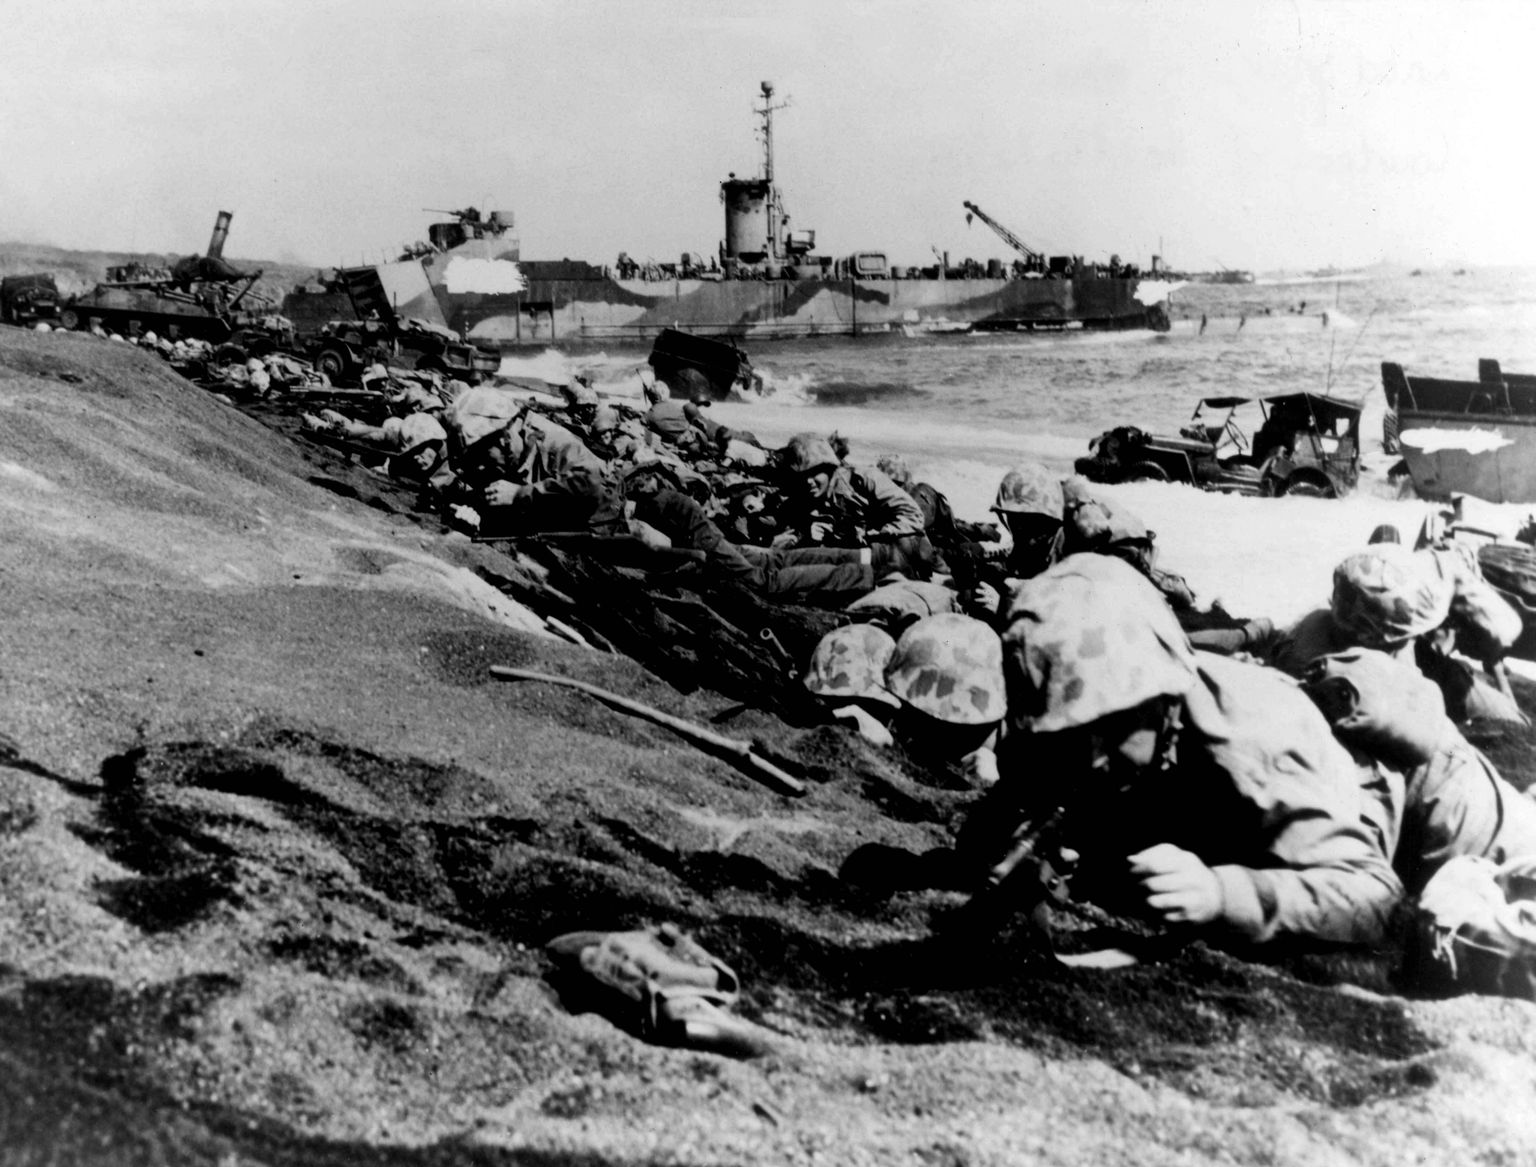 USA merejalaväelased 19. veebruaril 1945 Japaani saare Iwo Jima rannal. Iwo Jima lahing kestis 189. veebruarist kuni 26. märtsini 1945 ning lõppes USA võiduga